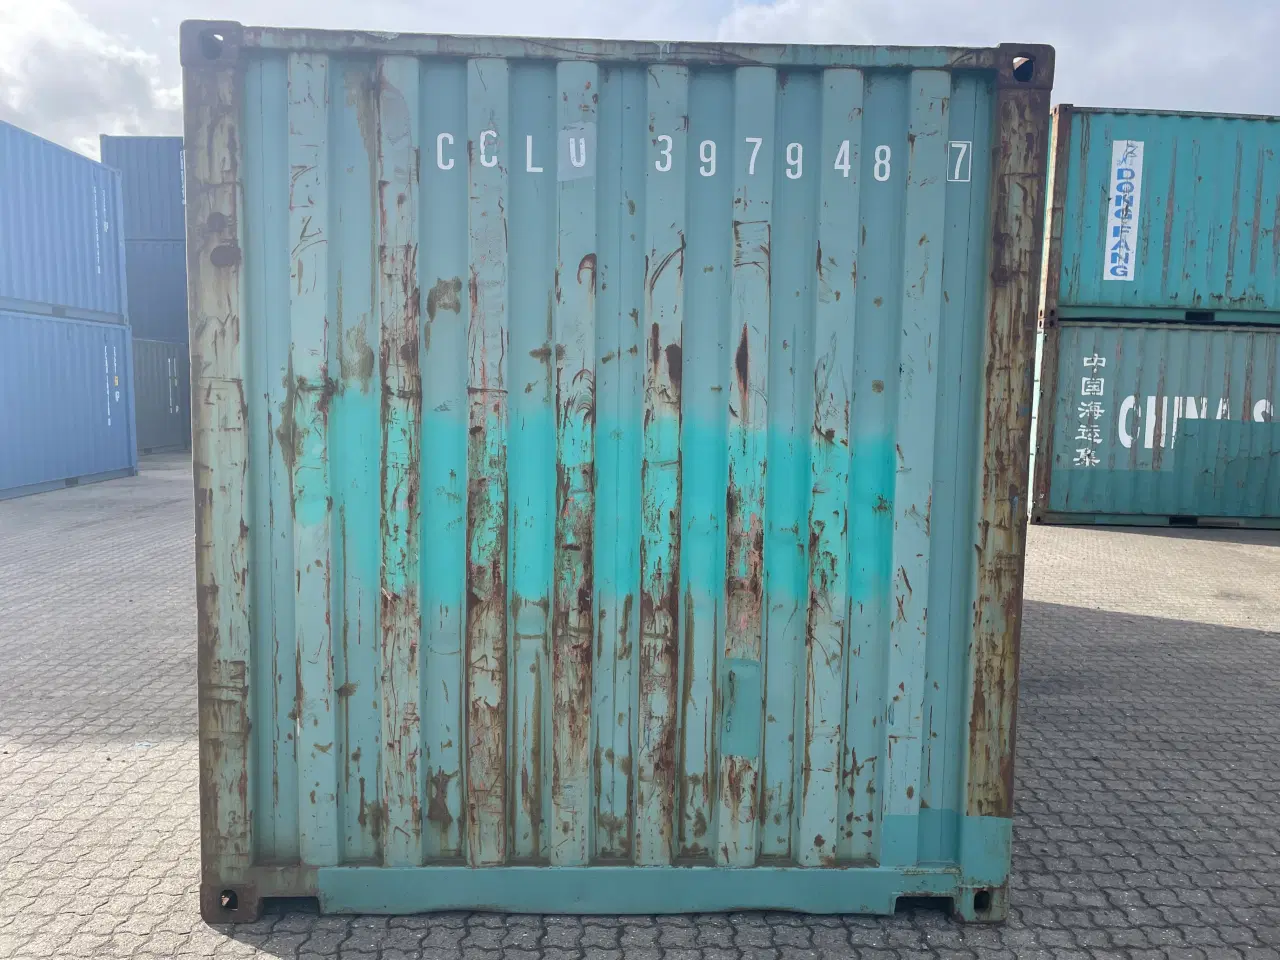 Billede 4 - 20 fods Container - ID: CCLU 397948-7